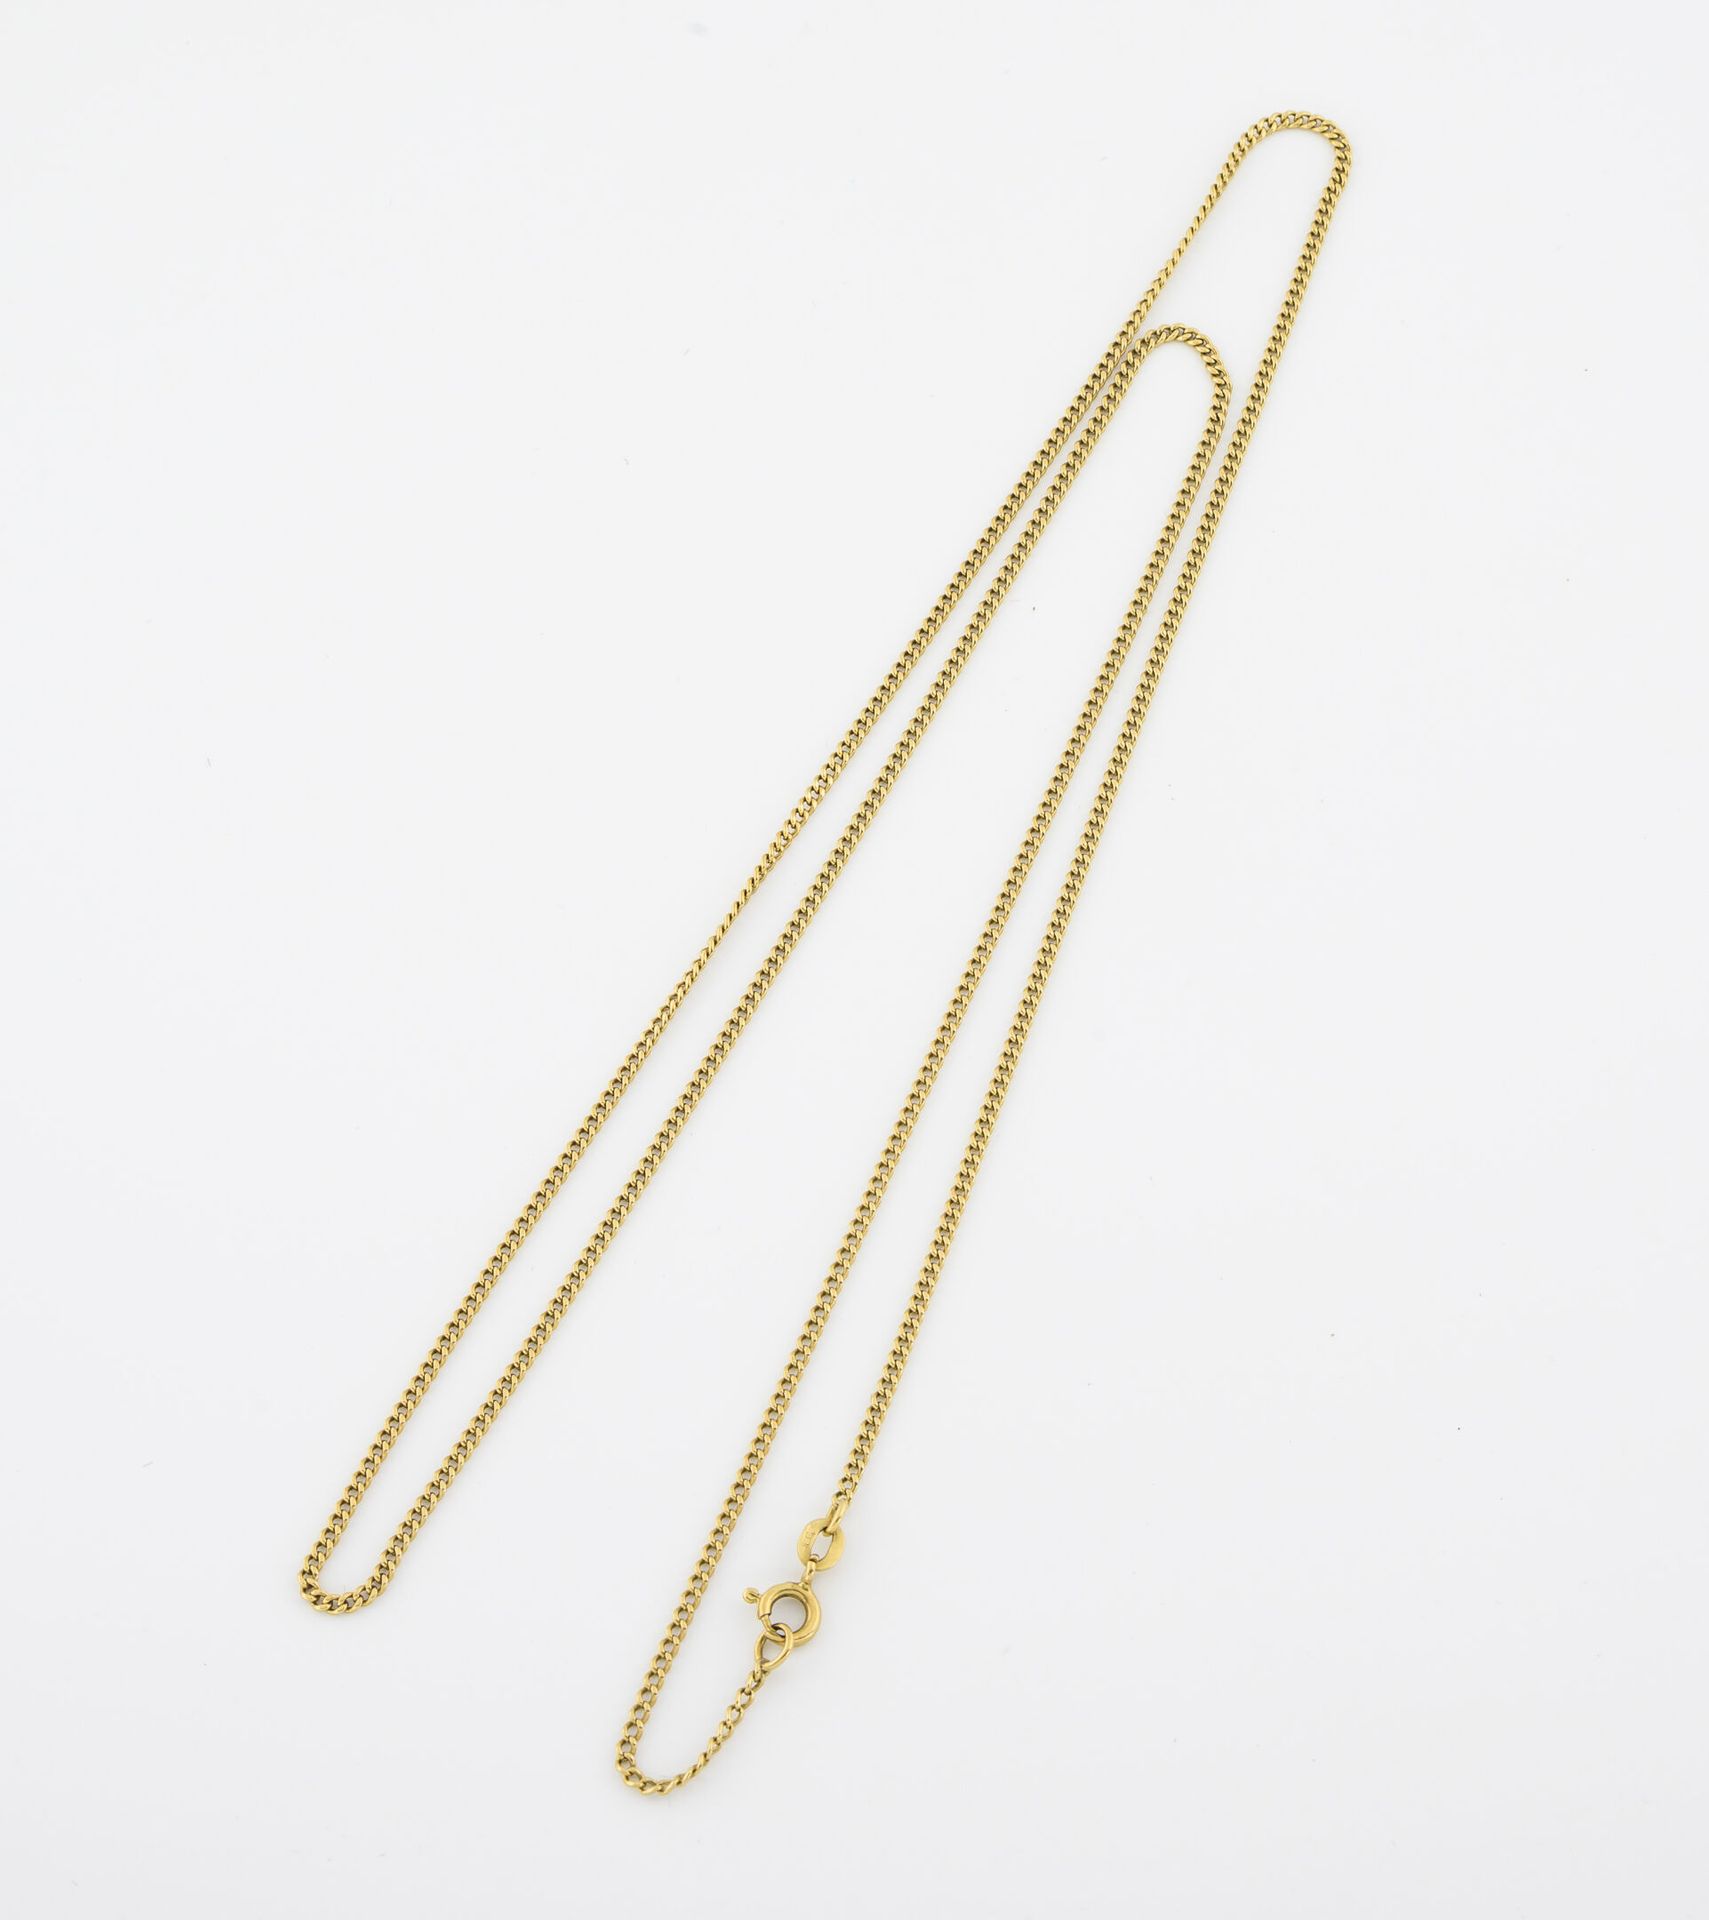 Null Collana lunga in oro giallo (750) con catena a cordoncino.

Chiusura ad ane&hellip;